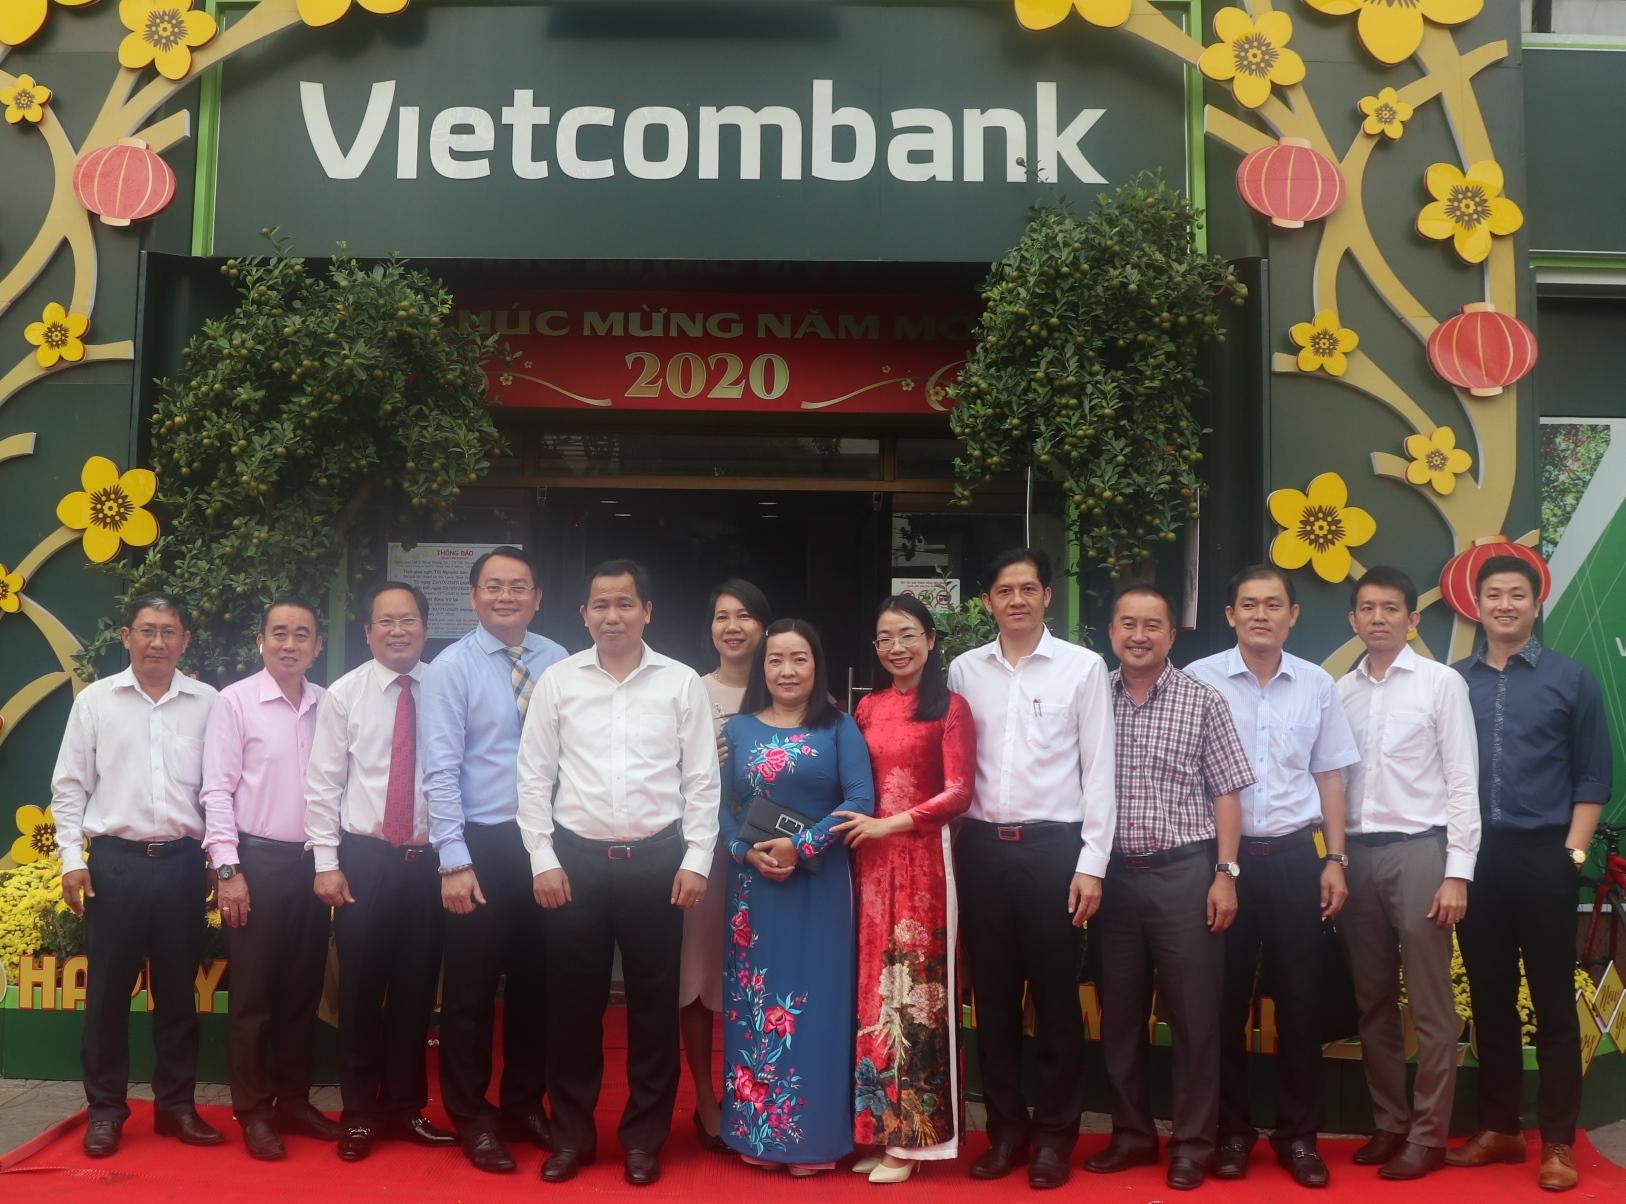 Chủ tịch UBND thành phố Cần Thơ đến thăm và chúc Tết Vietcombank Cần Thơ nhân dịp đầu Xuân mới 2020